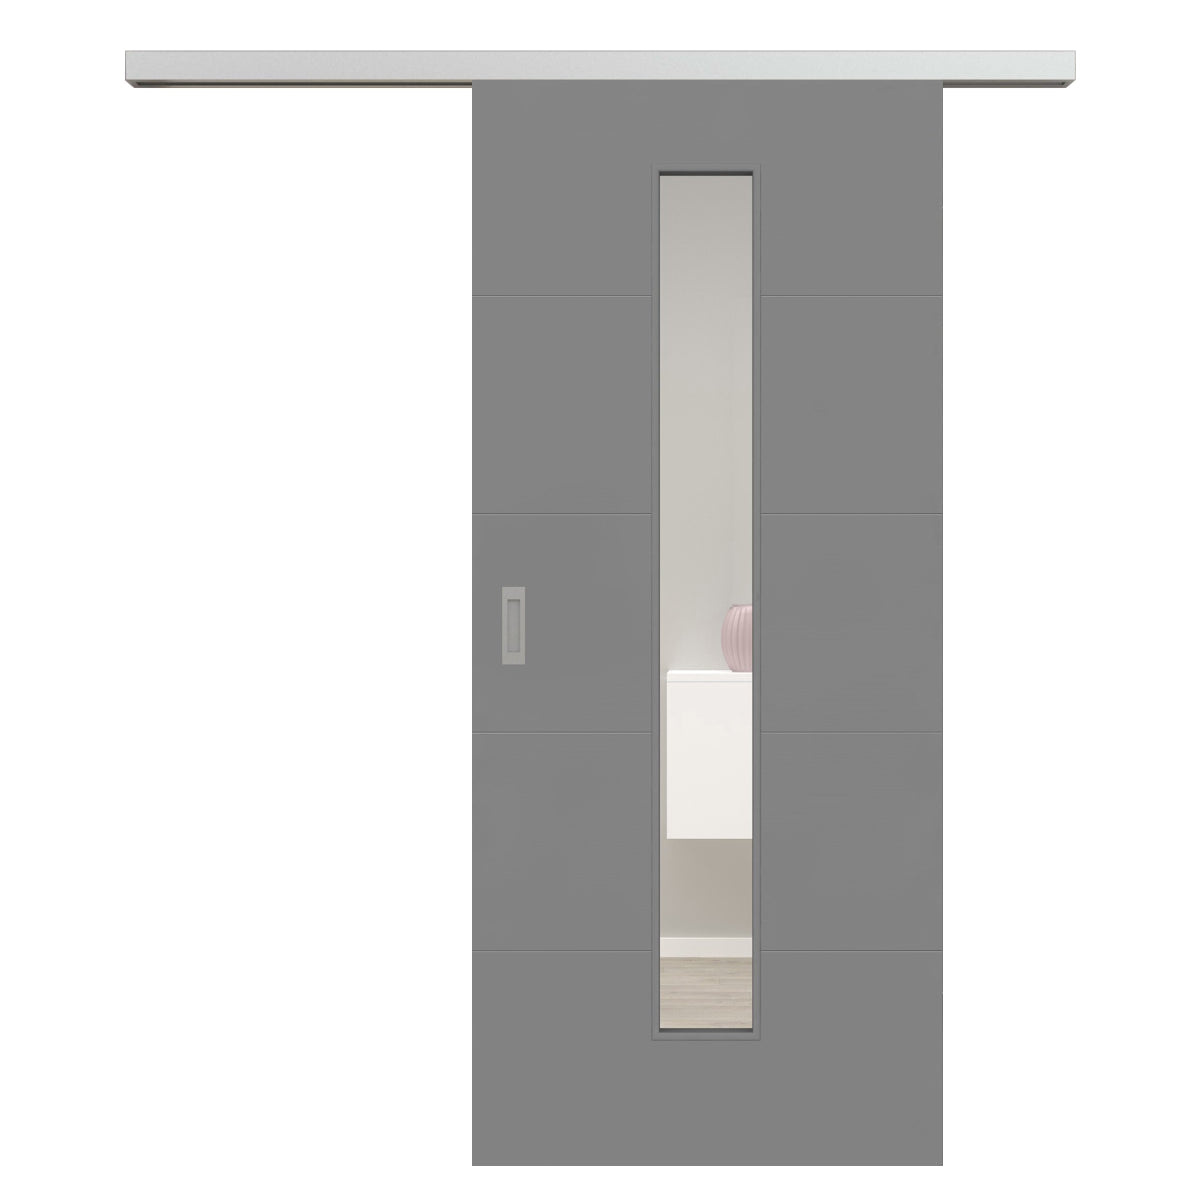 Schiebetür für Set mit Edelstahllaufkasten mit Lichtausschnitt grau 4 Rillen quer - Modell Designtür Q47LAM